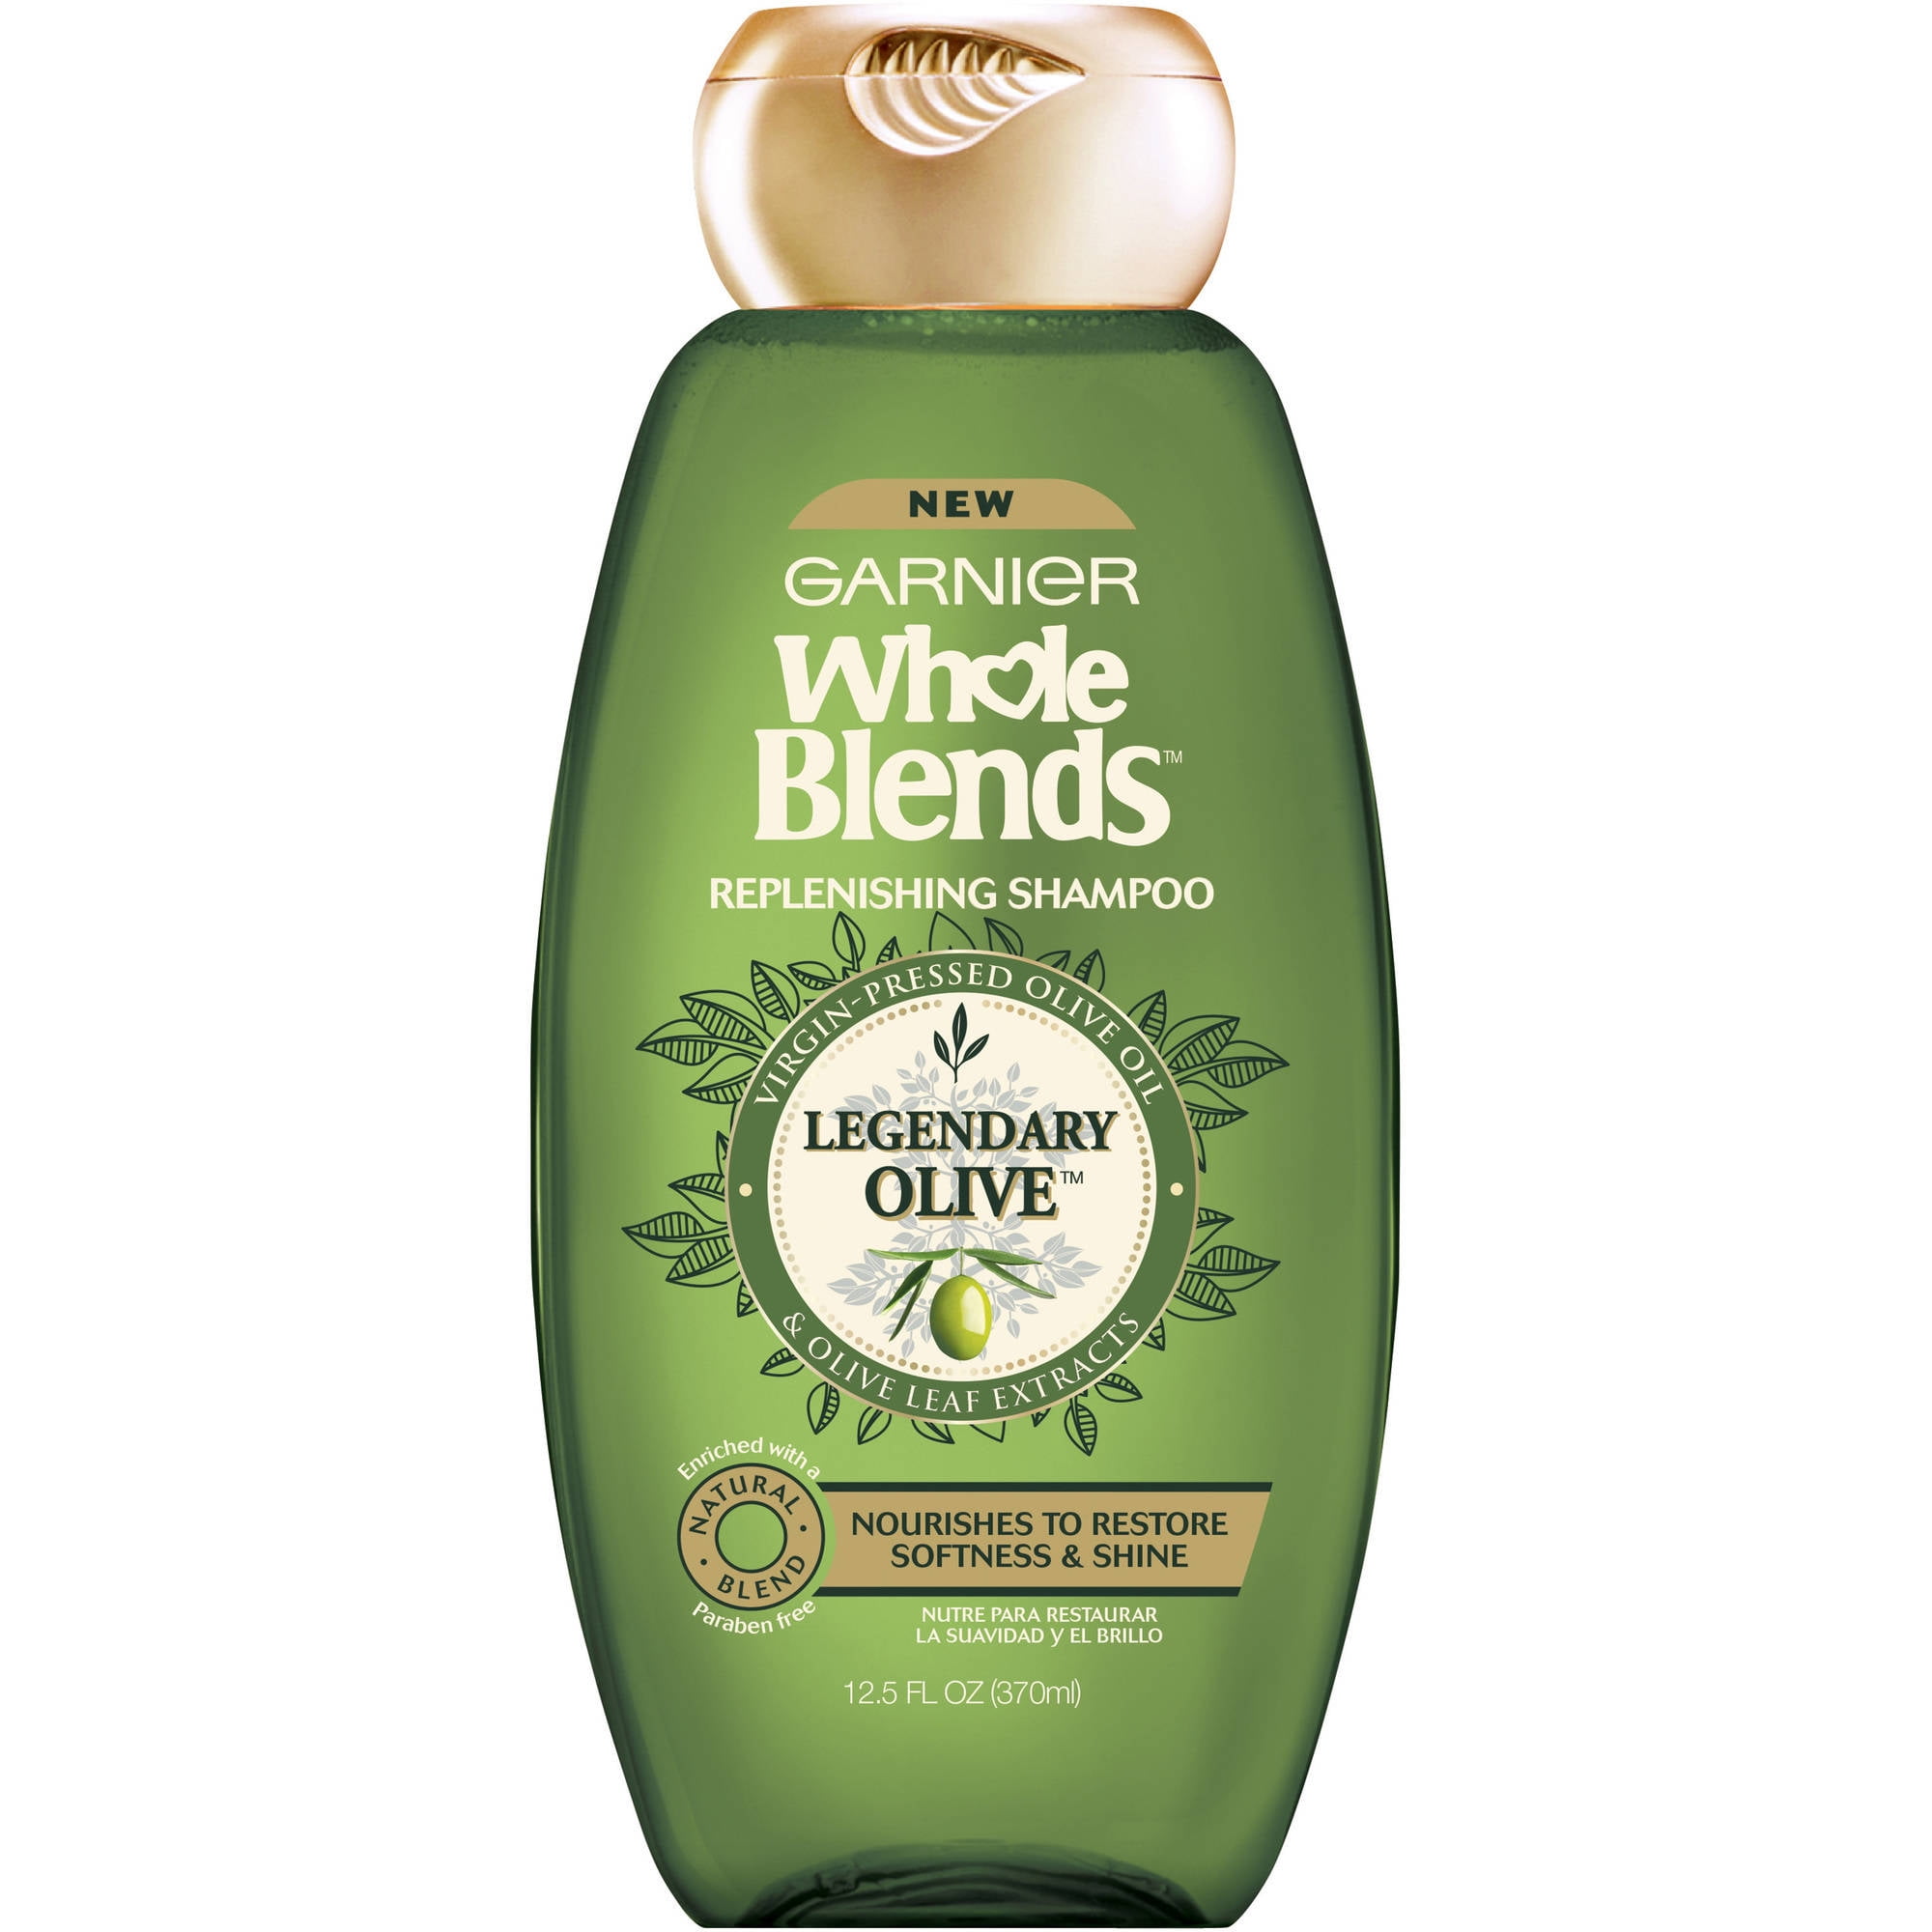 hoppe Vuggeviser Forbløffe Garnier Whole Blends Replenishing Shampoo Legendary Olive, Dry Hair, 12.5  fl. oz. - Walmart.com